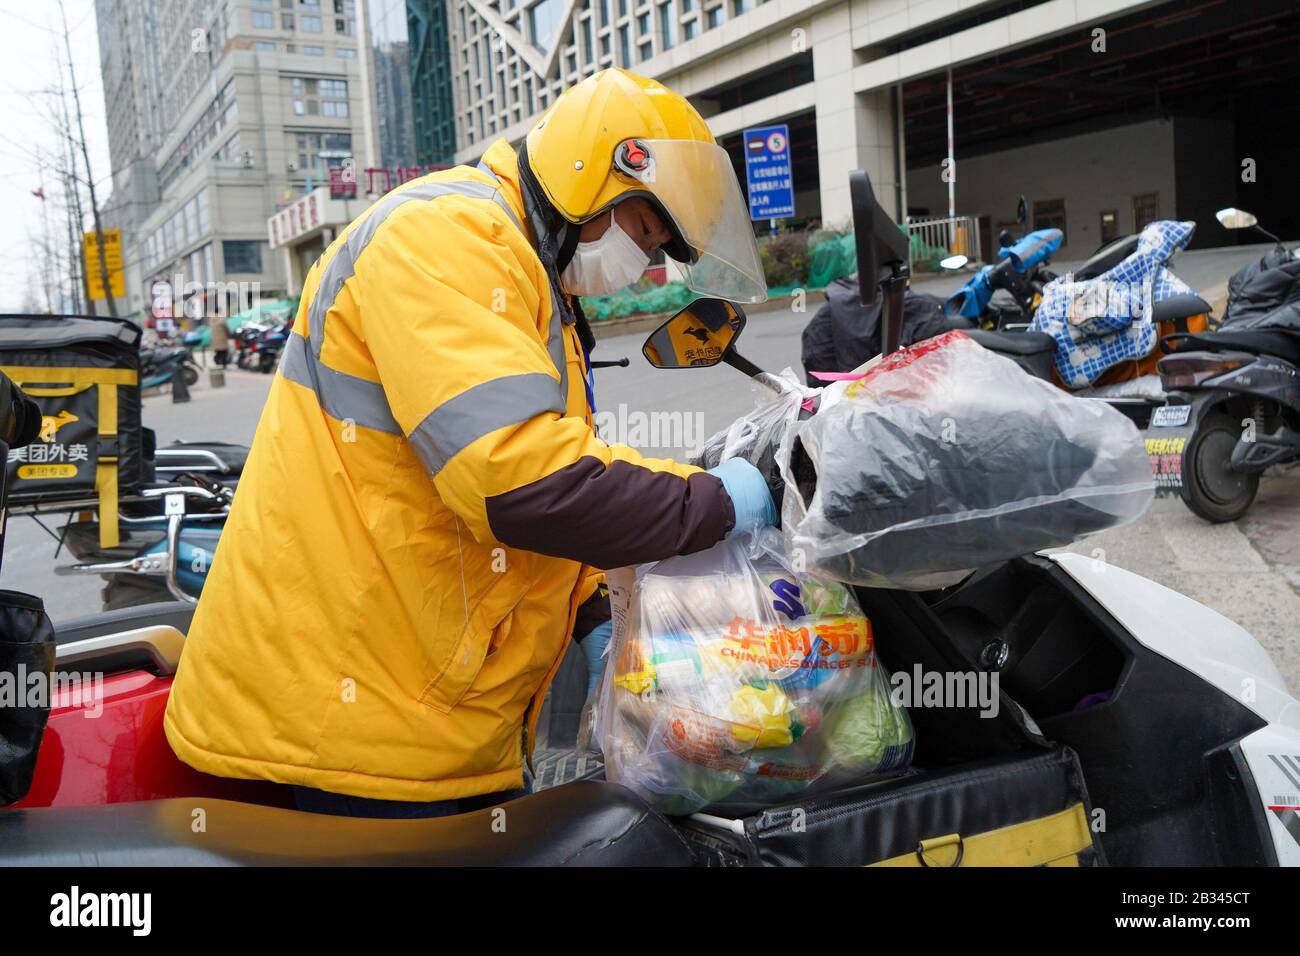 (200304) -- NANJING, le 4 mars 2020 (Xinhua) -- Le livreur À Emporter Chen Kai a placé des marchandises dans le conteneur de sa moto à Nanjing, capitale de la province du Jiangsu en Chine orientale, le 19 février 2020. Chen Kai, 33 ans, travaille comme livreur à emporter à Nanjing depuis près de quatre ans. Durant cette période spéciale de lutte contre la nouvelle maladie du coronavirus (COVID-19), Chen et ses collègues ont essayé de mieux servir les citoyens qui restent à la maison. Dans un effort pour réduire le risque d'infection pour les clients et eux-mêmes, ils suivent la prévention et le contrôle stricts m Banque D'Images